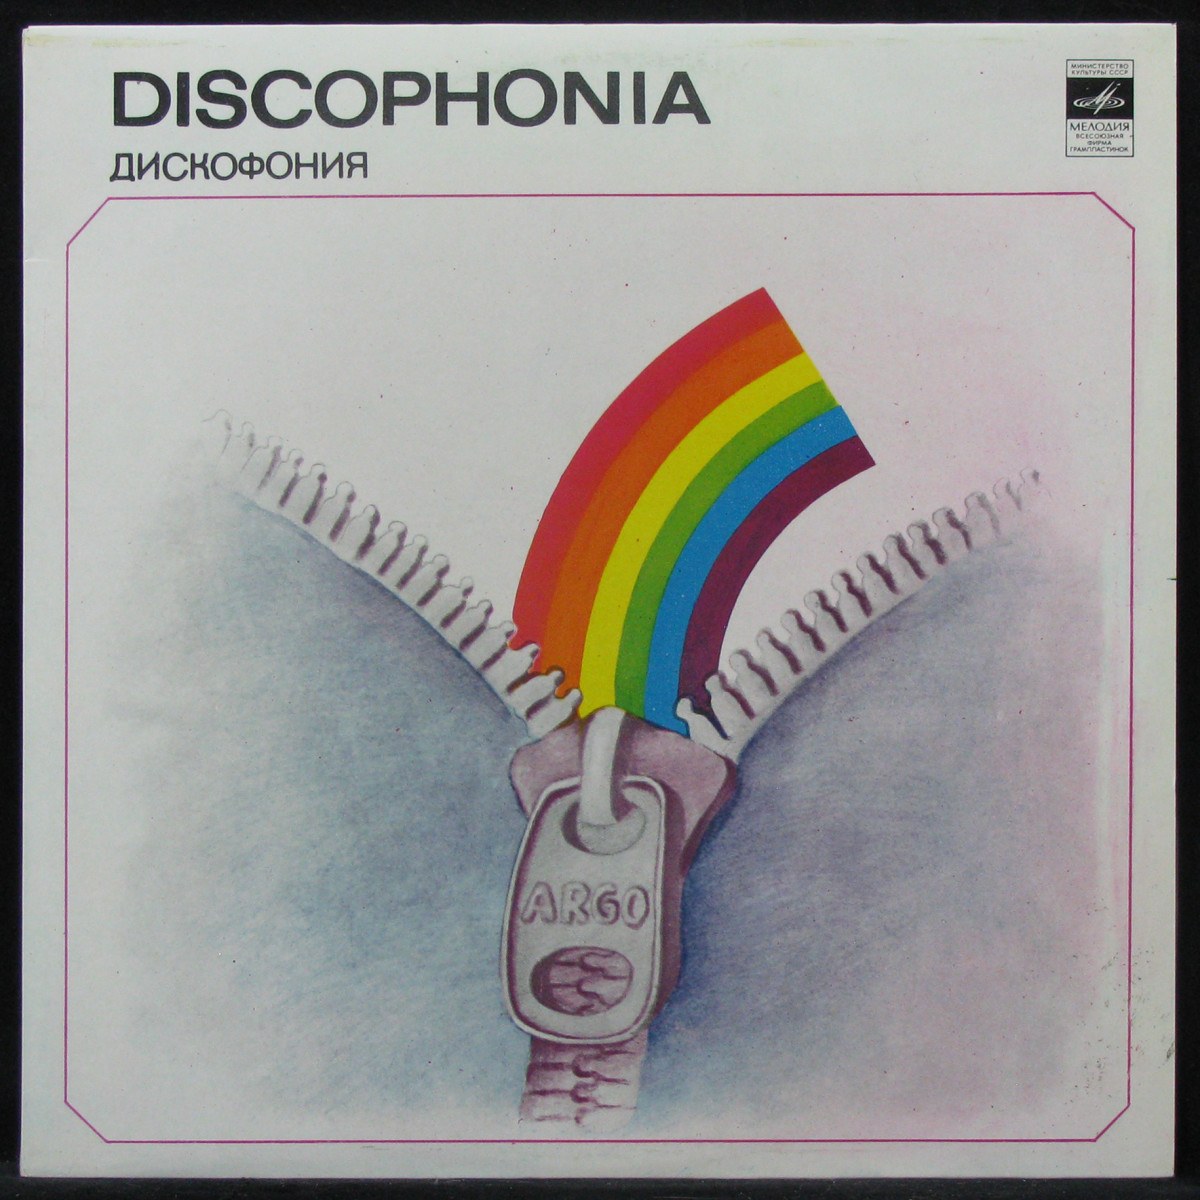 LP Арго — Discophonia / Дискофония фото